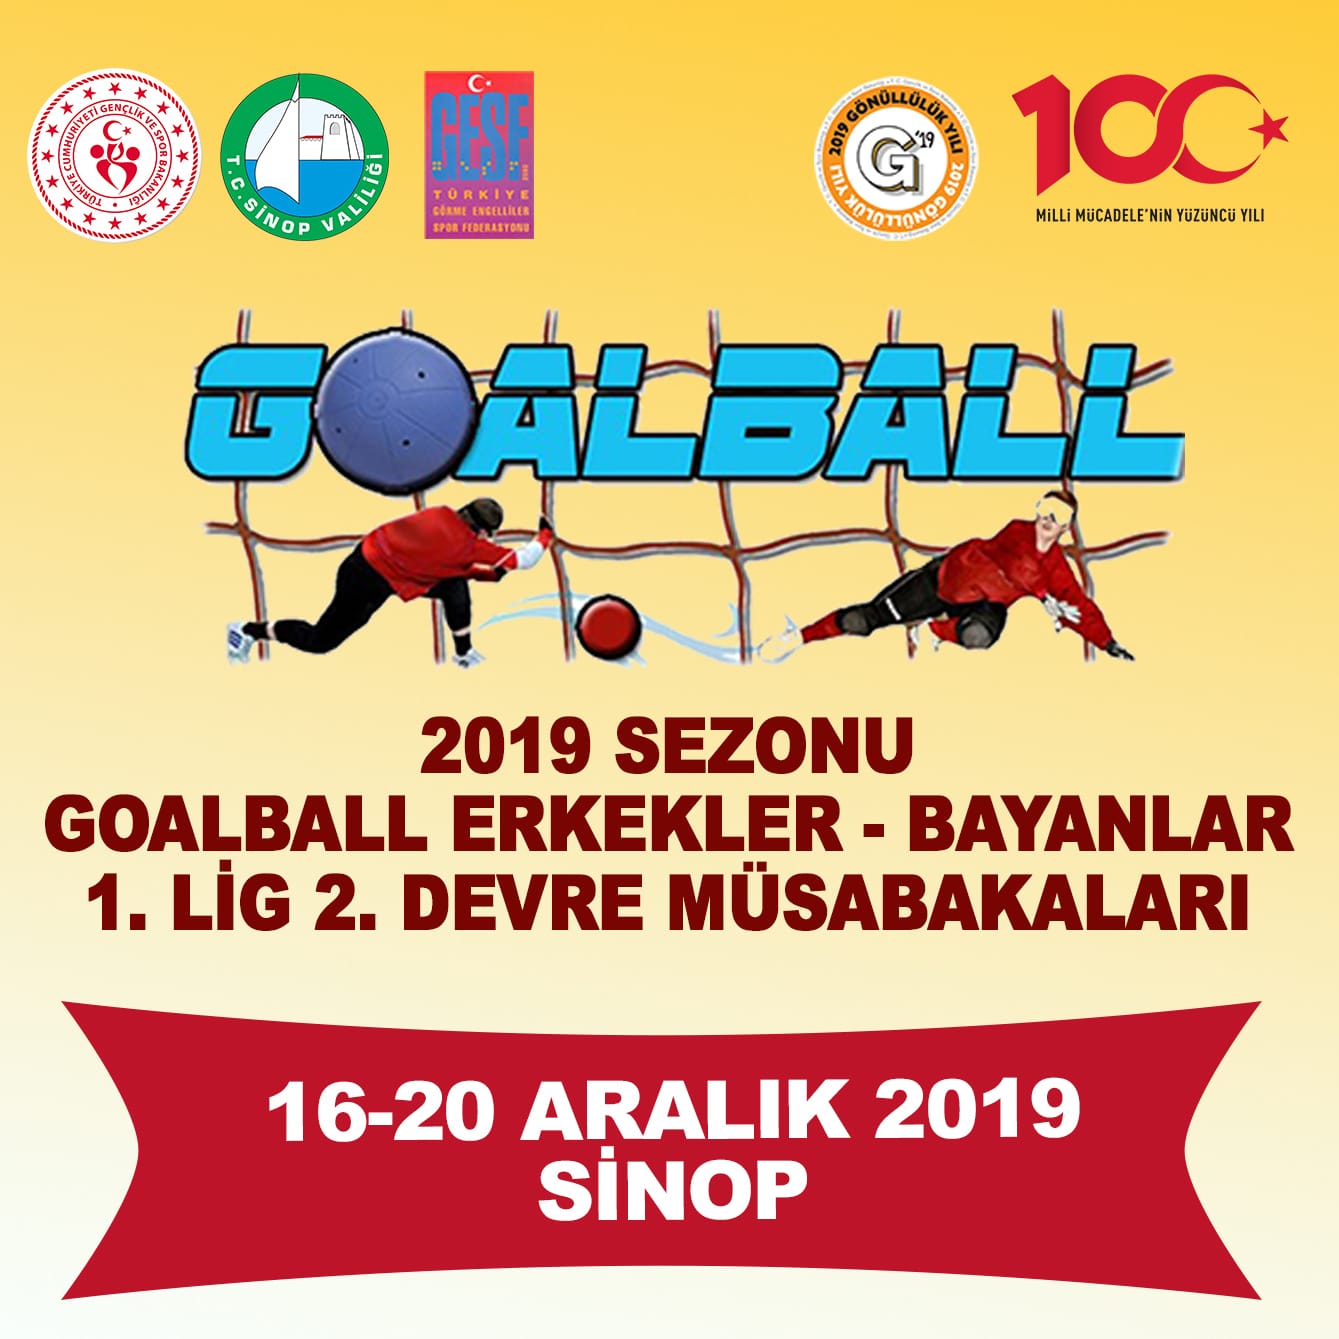 Sinop'ta Goalball Müsabakaları Başlıyor